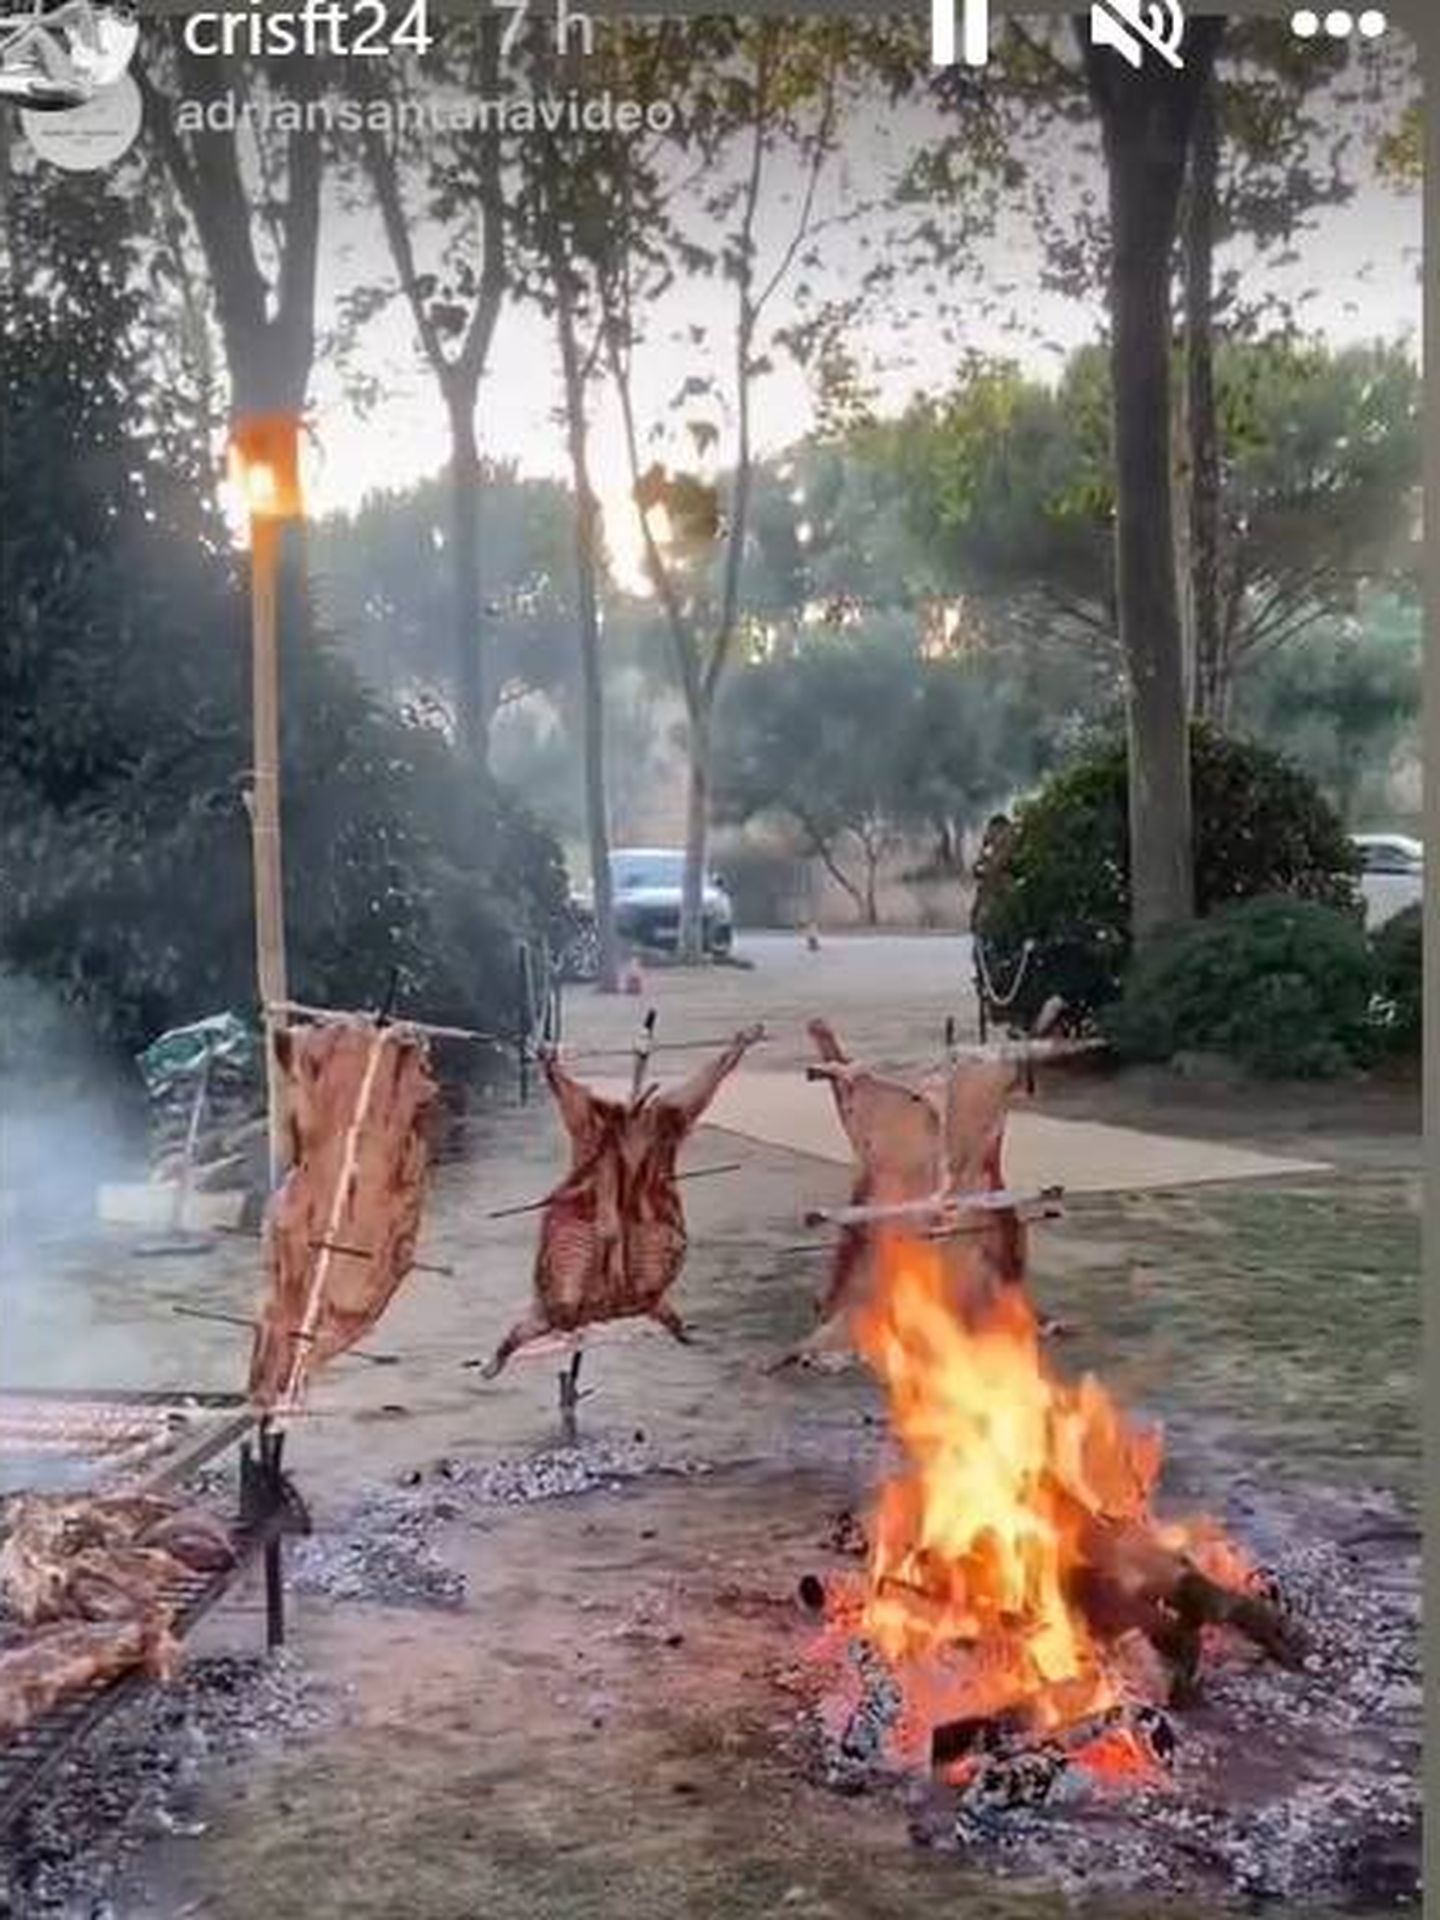 La preparación del asado argentino. (IG)